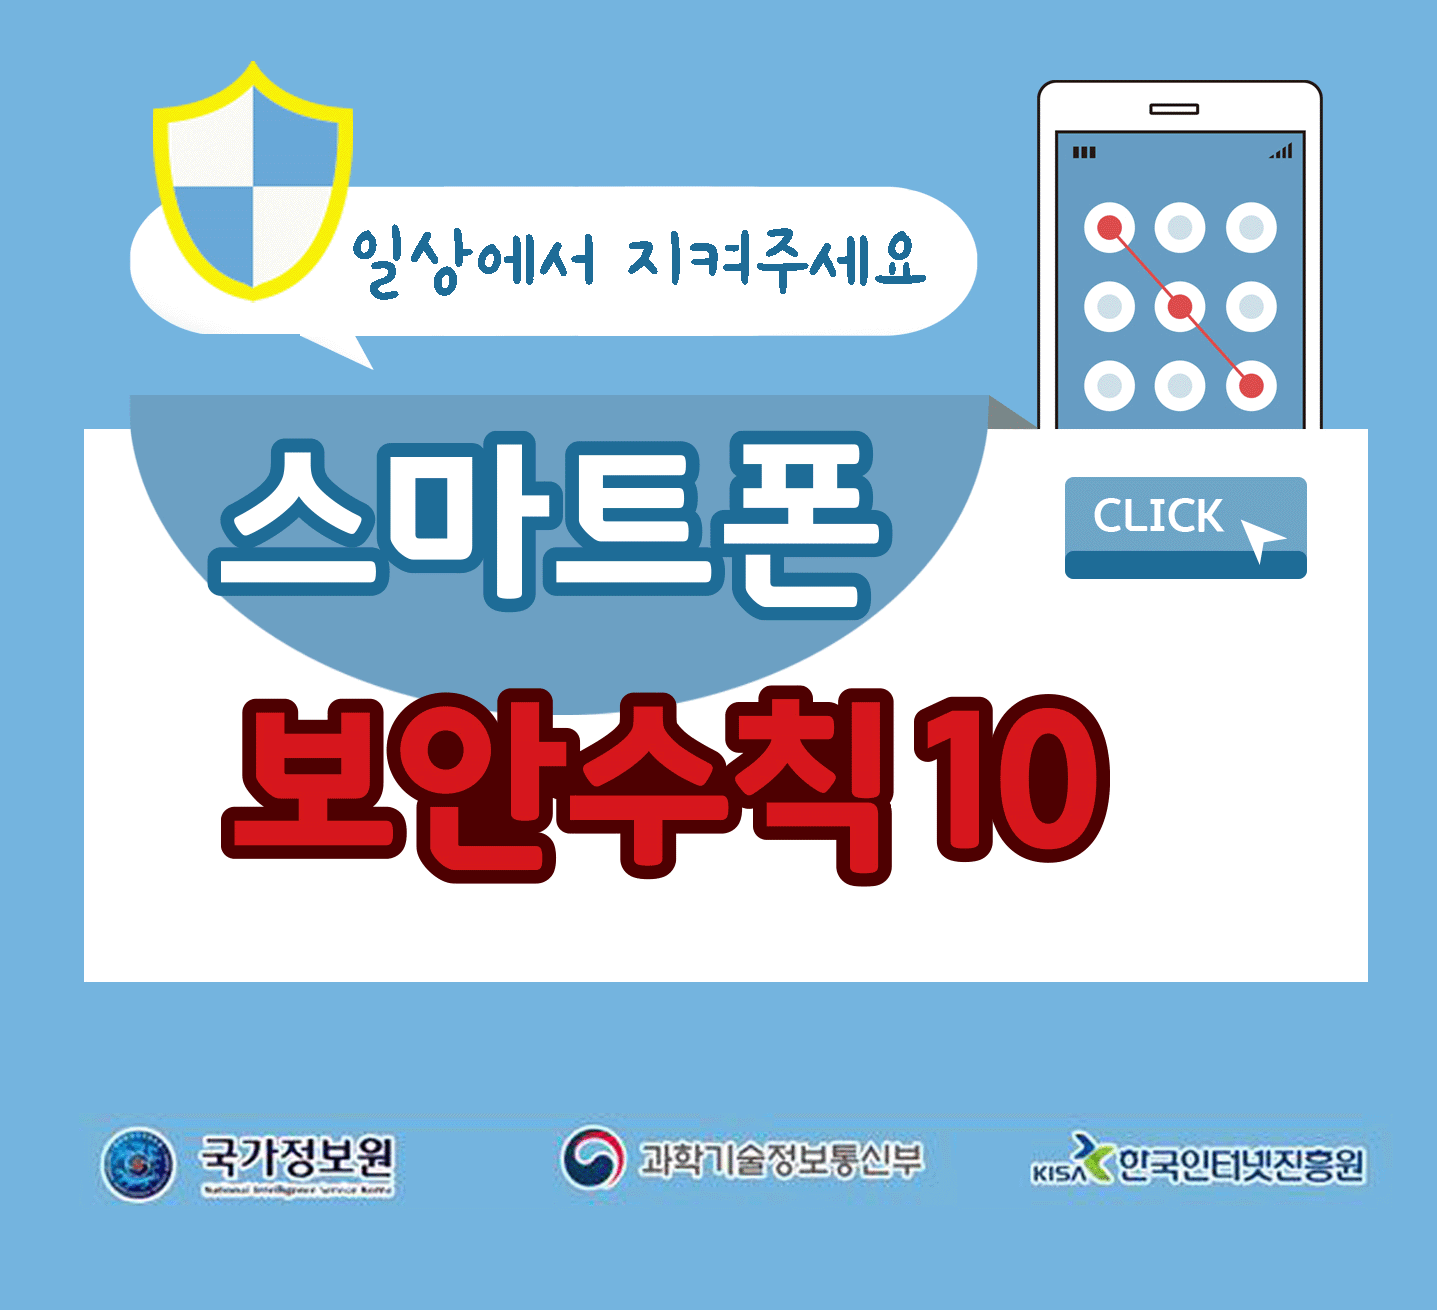 일상에서 지켜주세요
스마트폰 보안수칙 10 CLICK
국가정보원, 과학기술정보통신부, 한국인터넷진흥원;jsessionid=C0AC81CCAD4AF27BD35C55761112F2CC